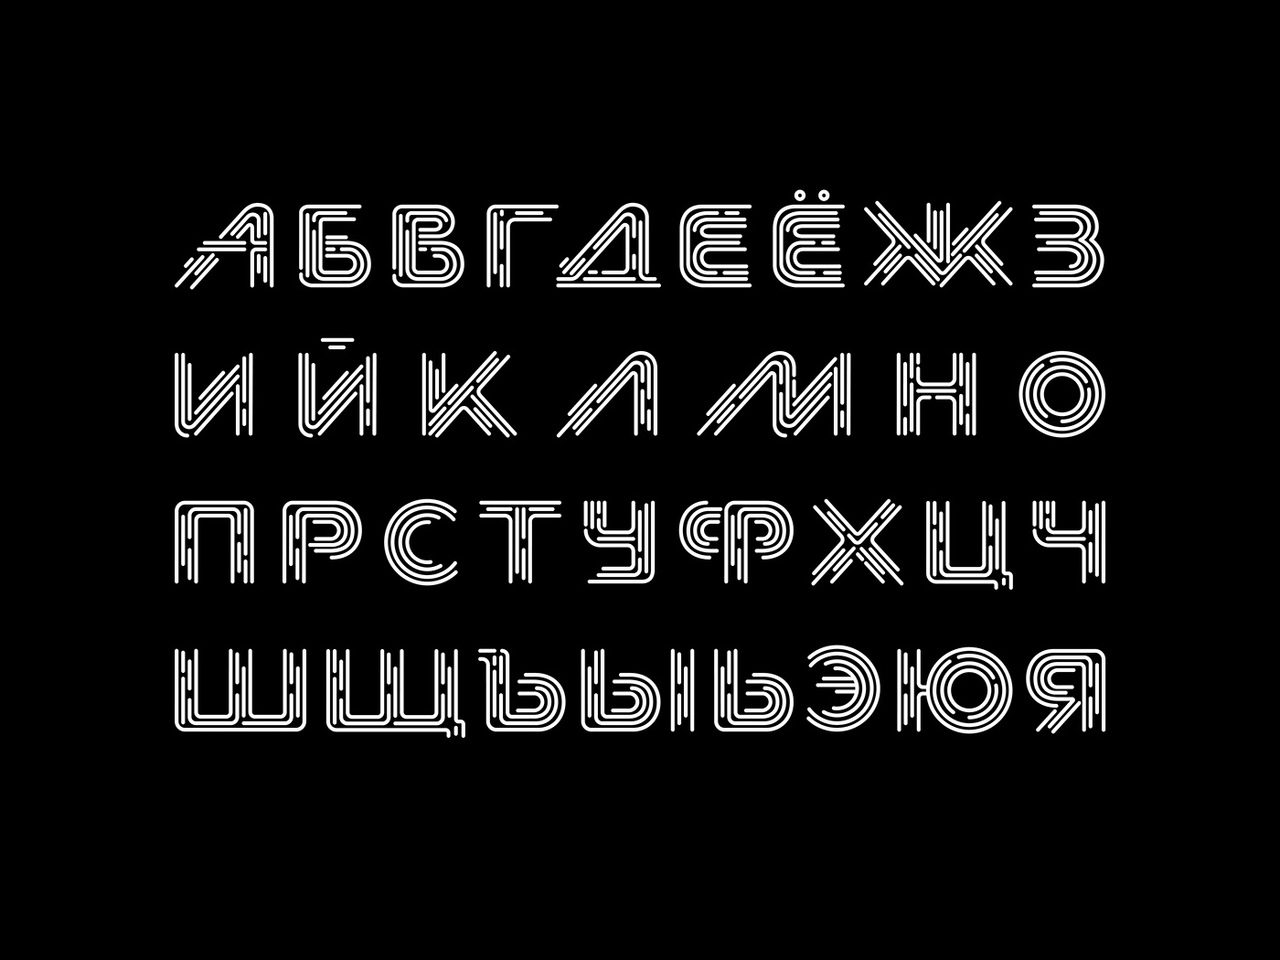 русский шрифт из гта 5 фото 110